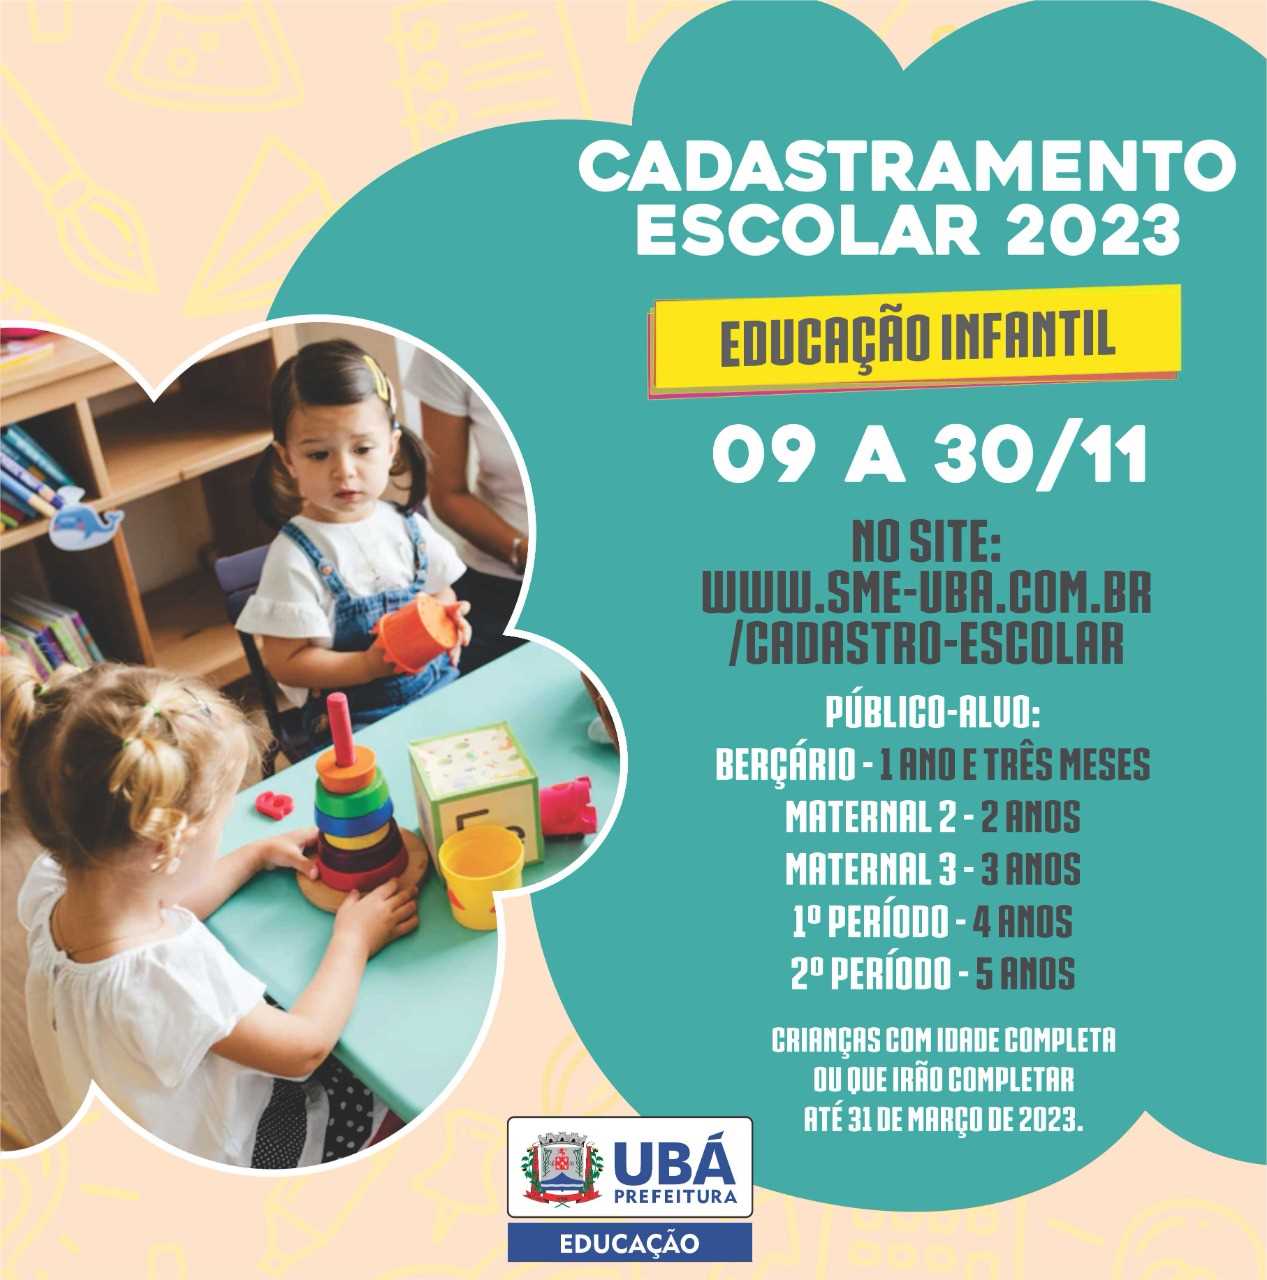 Prefeitura Municipal De Ubá Prefeitura Inicia Cadastramento Escolar Para 2023 0094